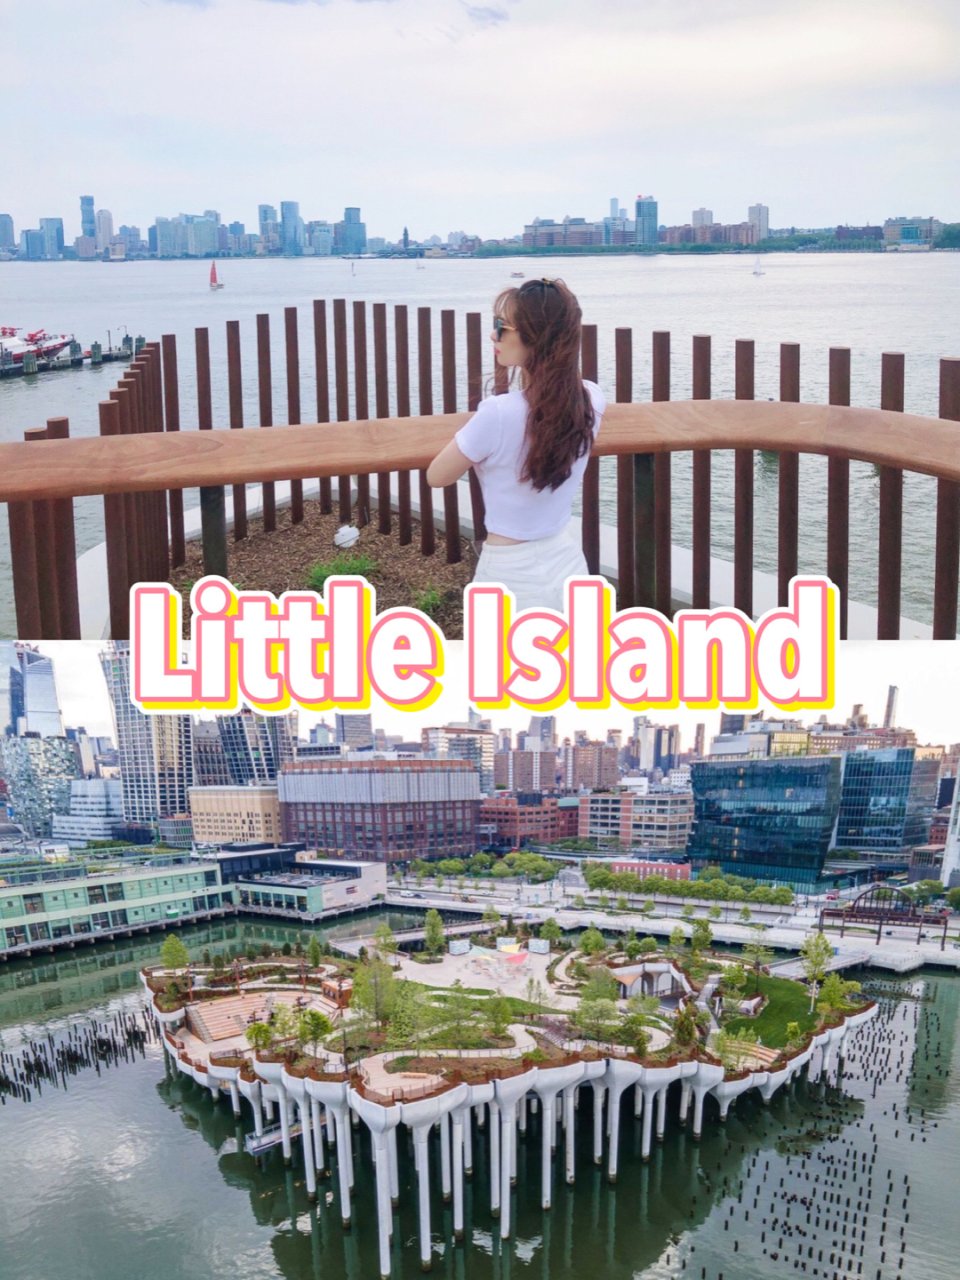 开了‼️曼哈顿最炫浮岛公园开放啦‼️...